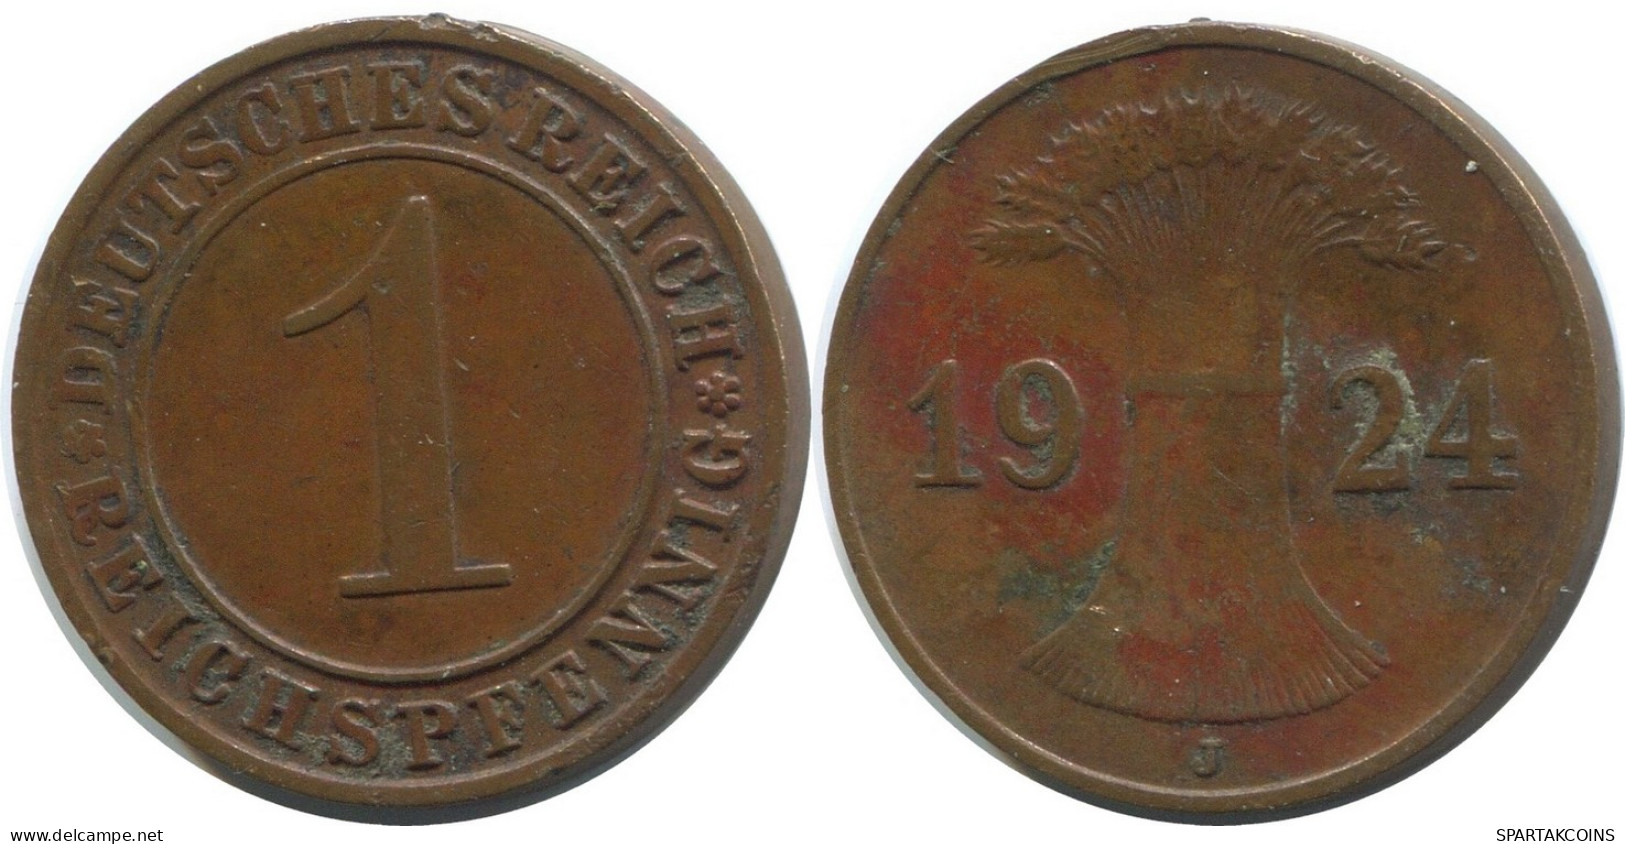 1 REICHSPFENNIG 1924 J ALEMANIA Moneda GERMANY #AD436.9.E - 1 Rentenpfennig & 1 Reichspfennig